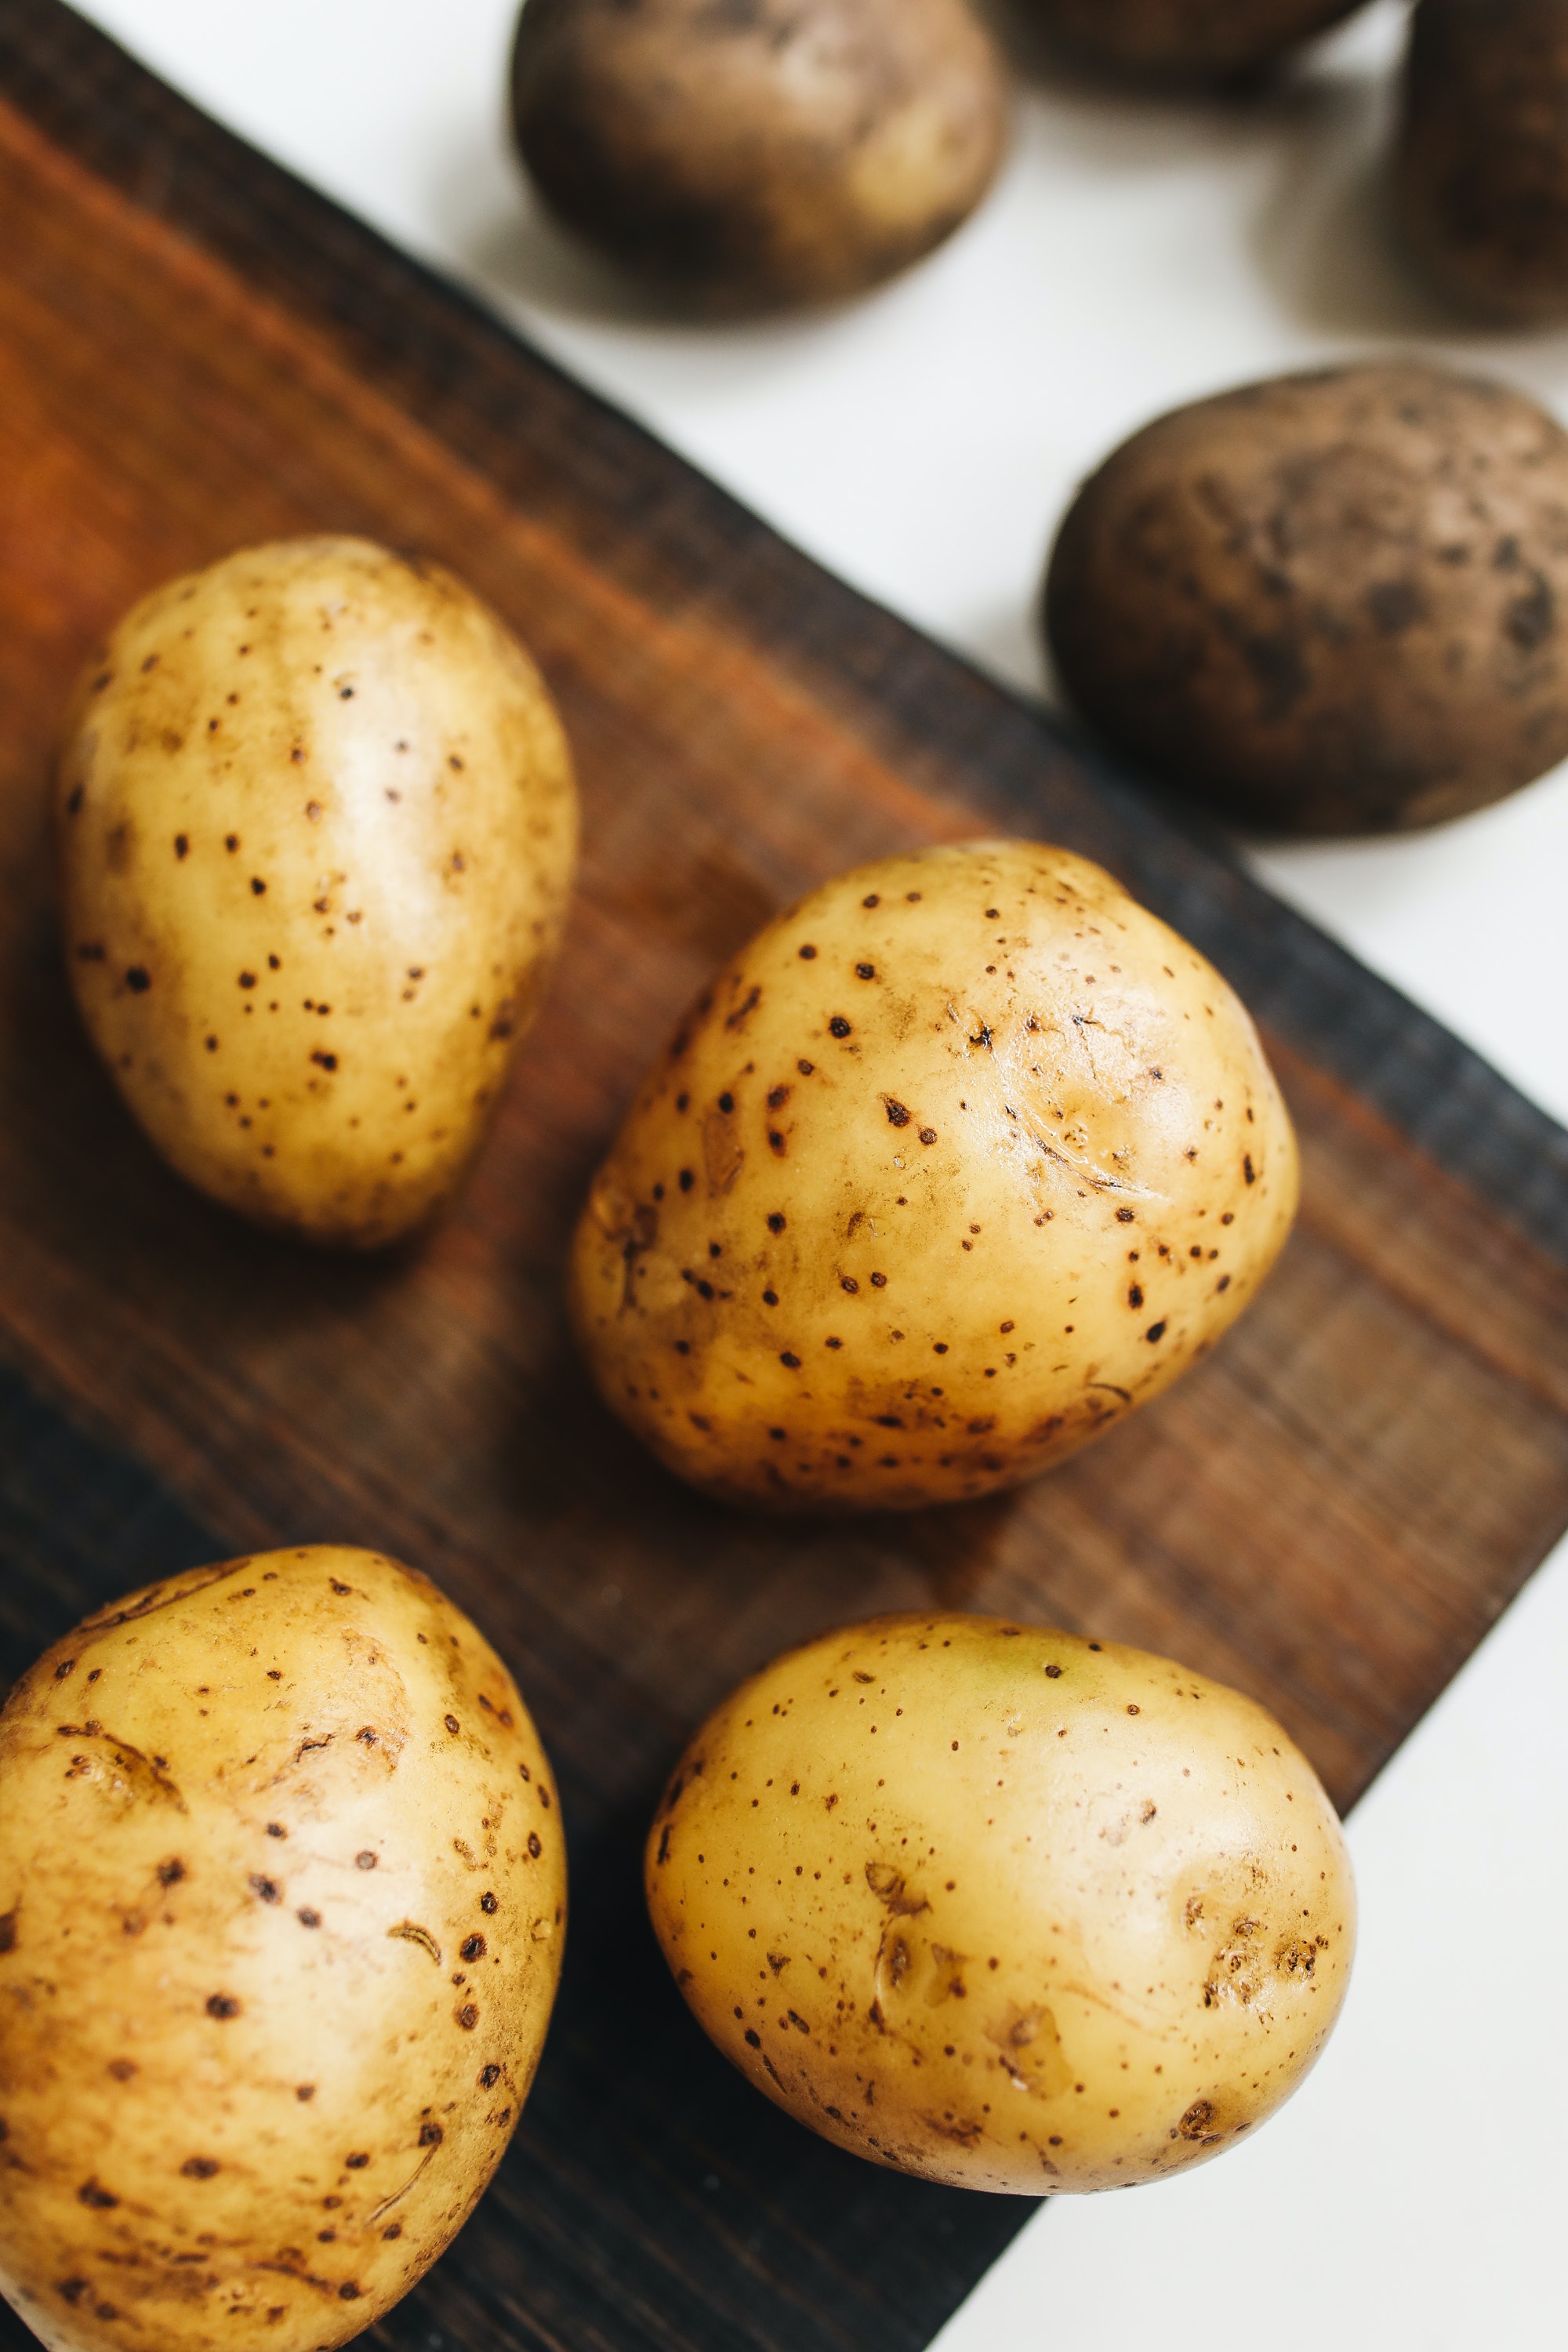 photo-of-potato-on-wooden-surface-4110462